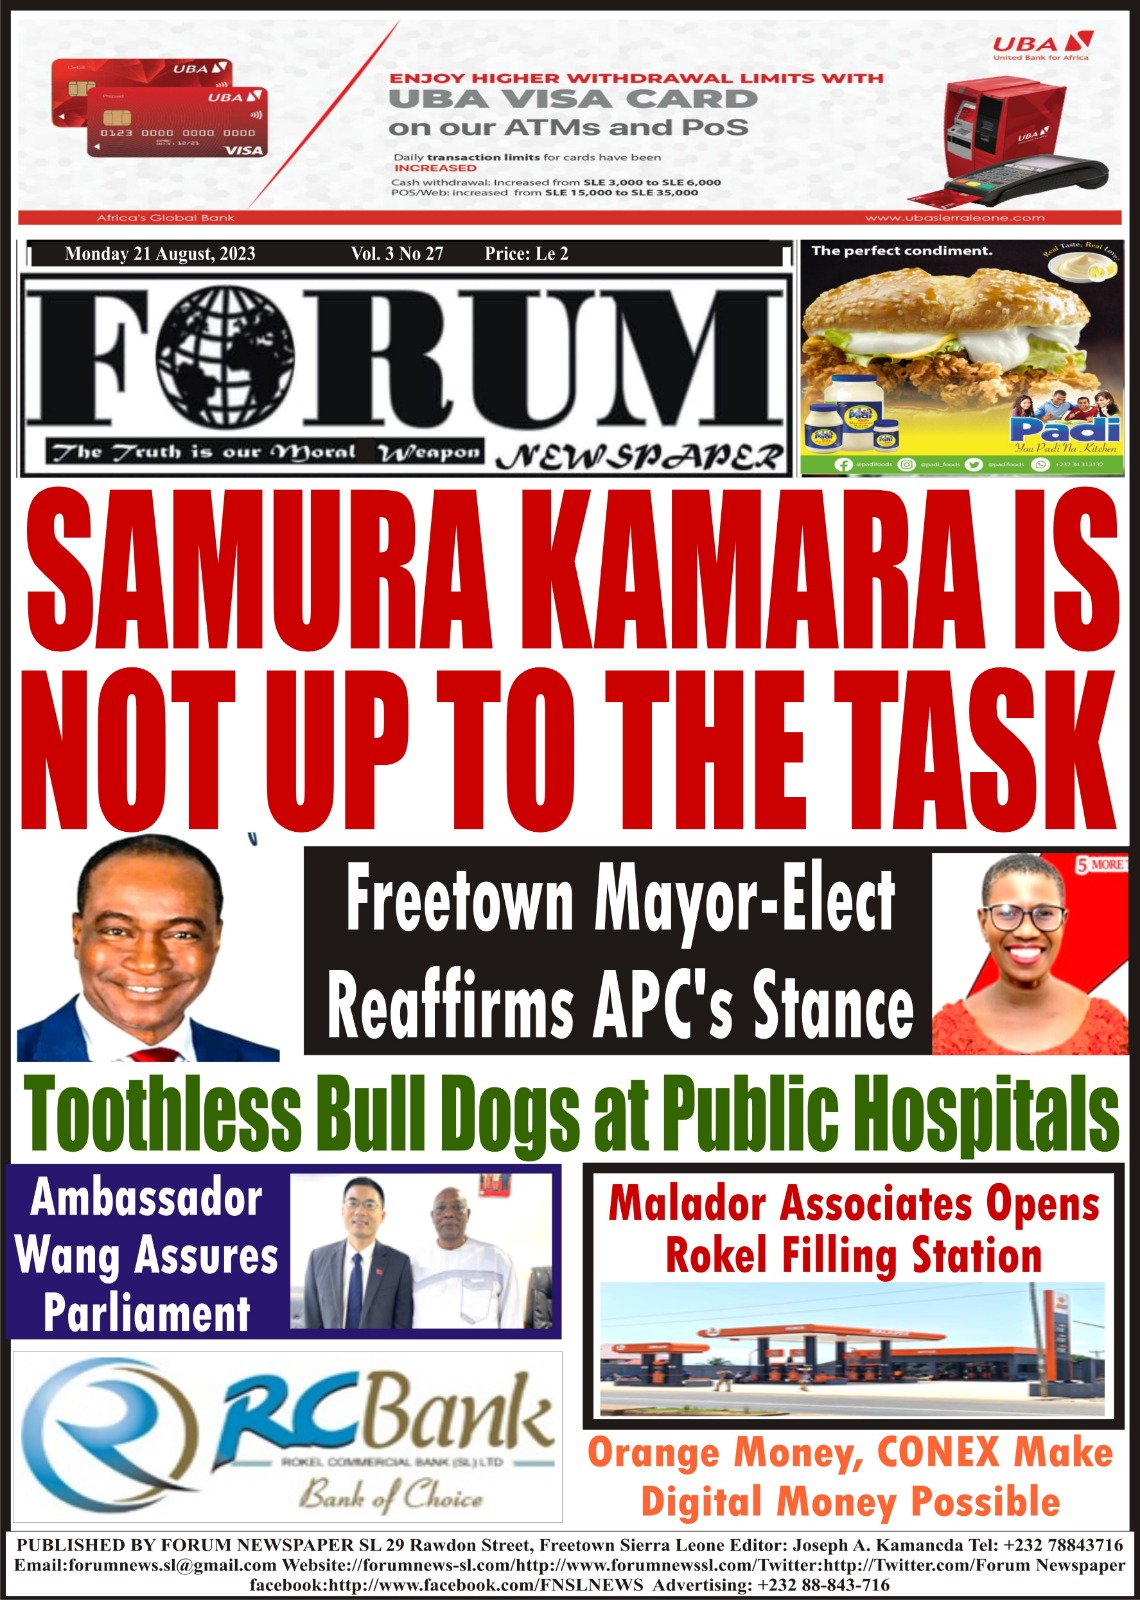 SAMURA KAMARA IS NOT UP TO THE TASK